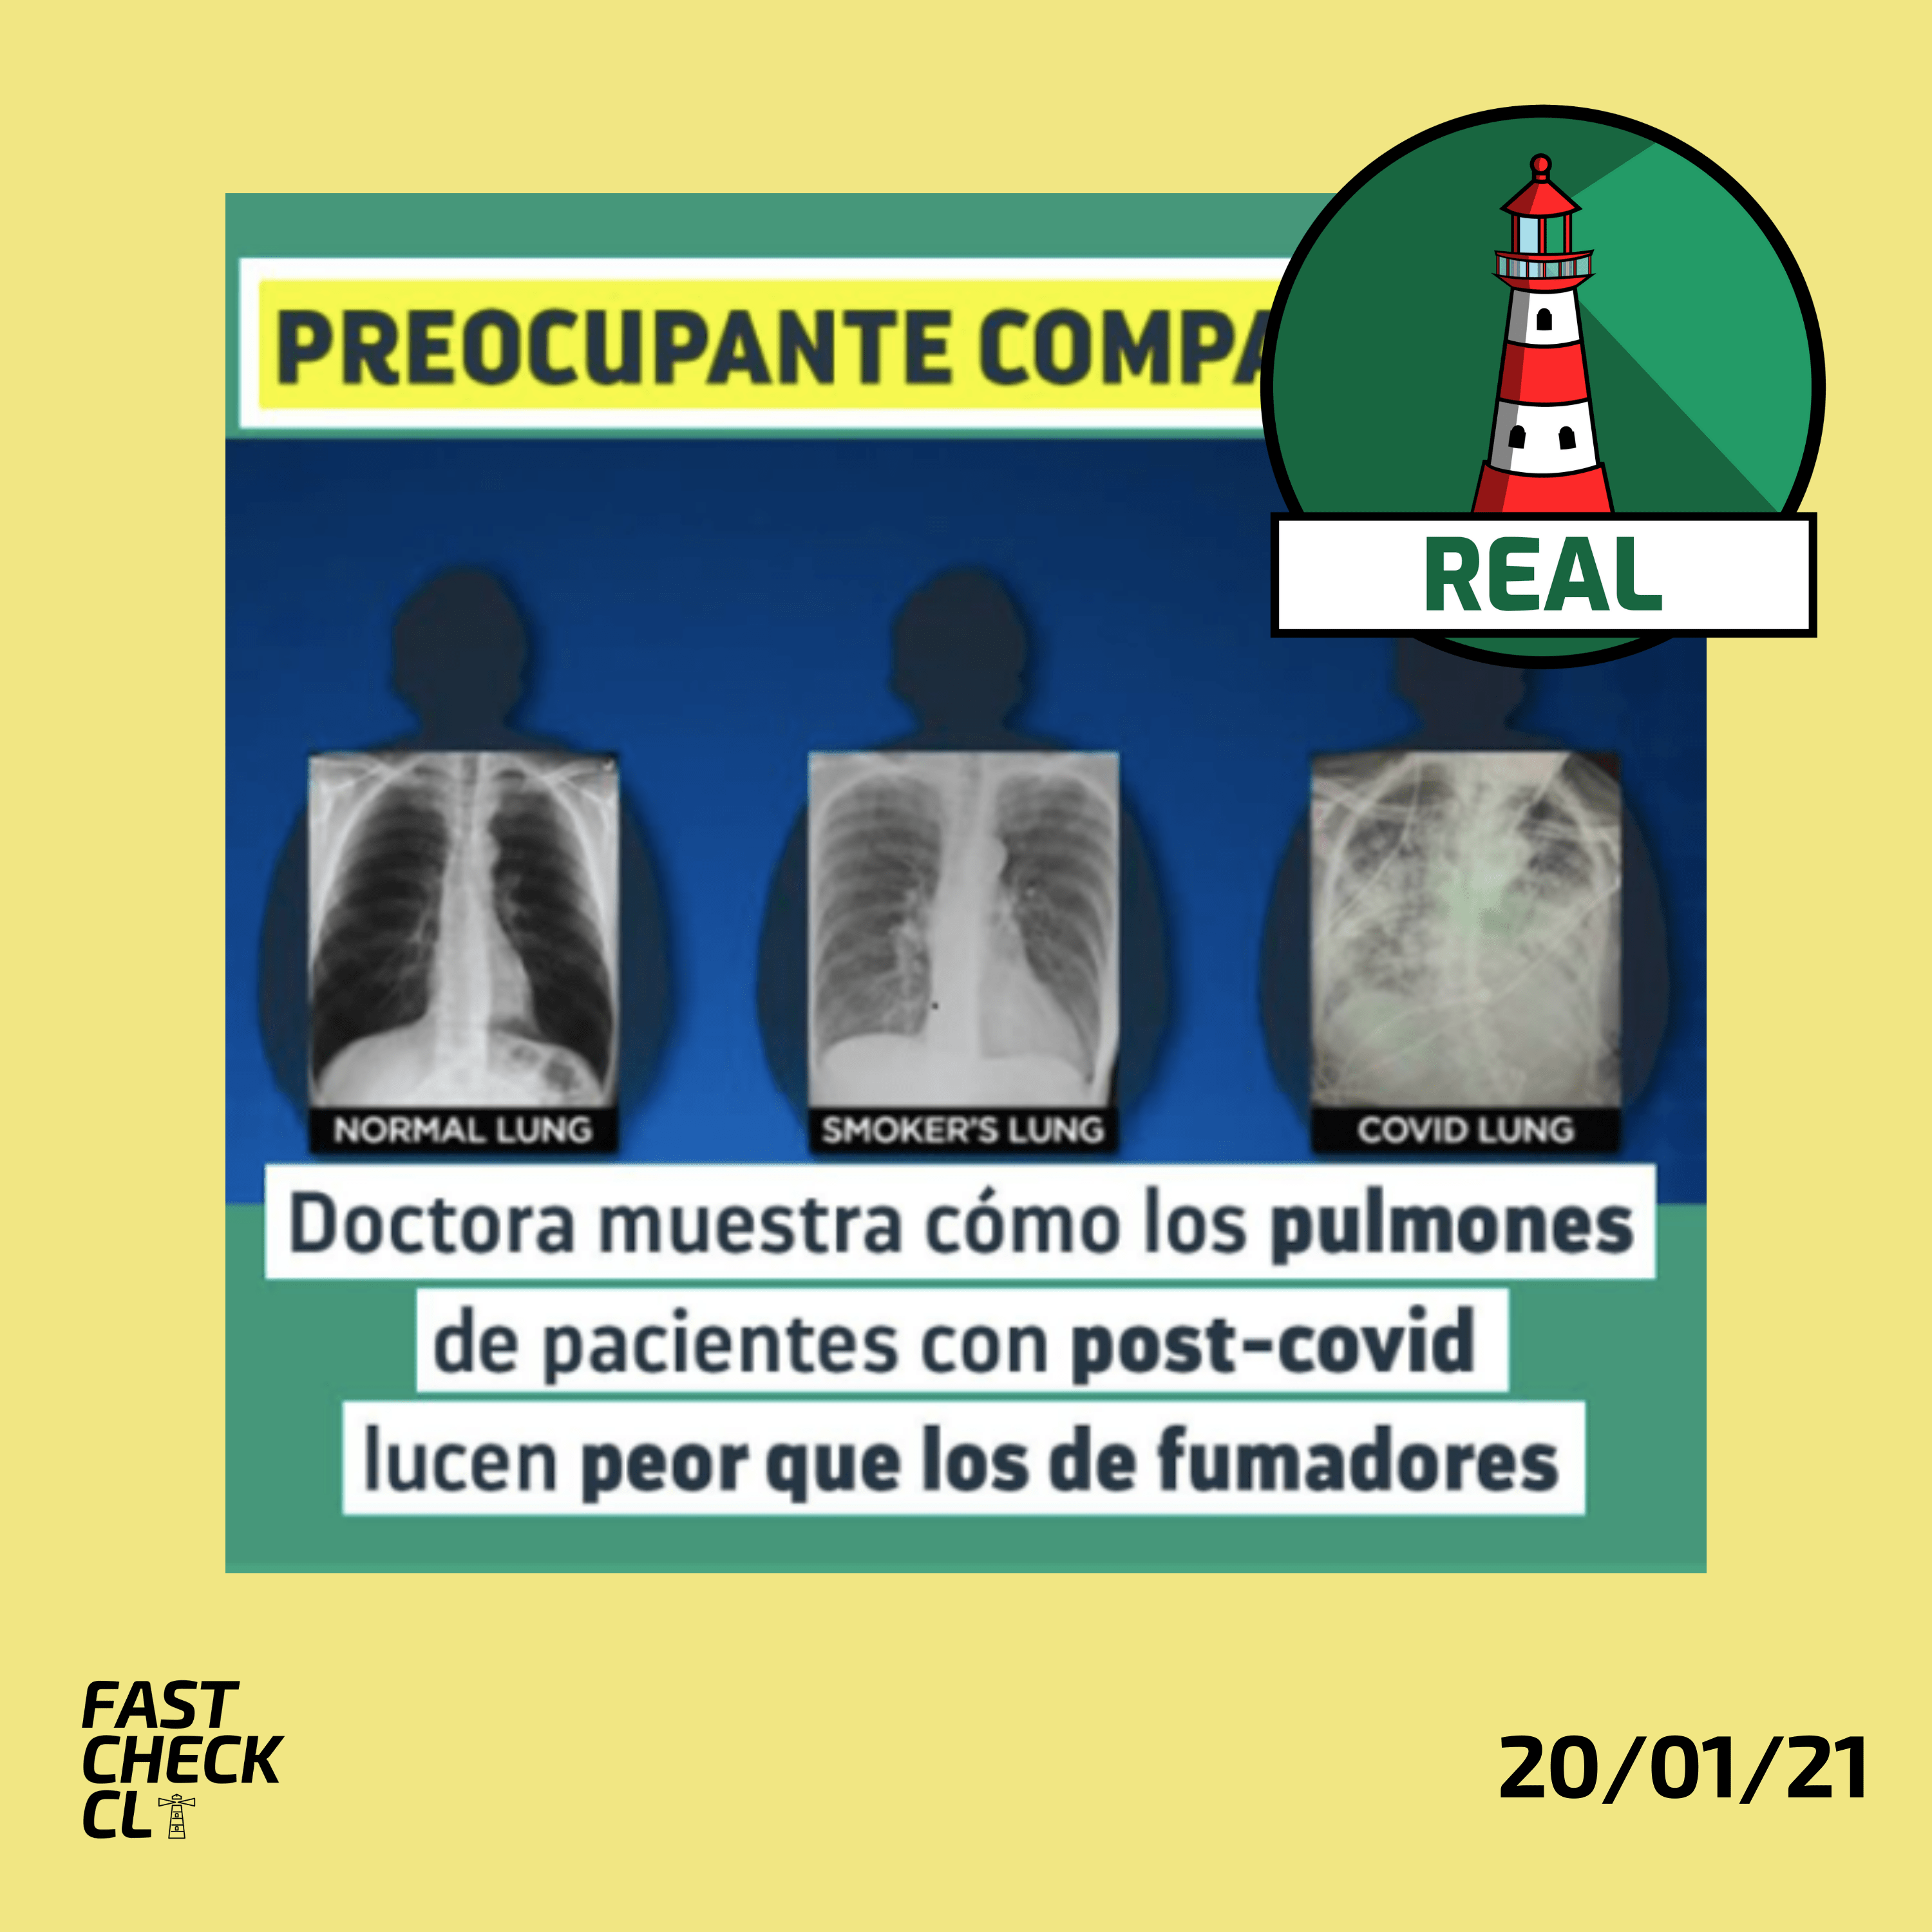 You are currently viewing (Imagen) “Doctora muestra c贸mo los pulmones de pacientes post-Covid lucen peor que los de fumadores”: #Real